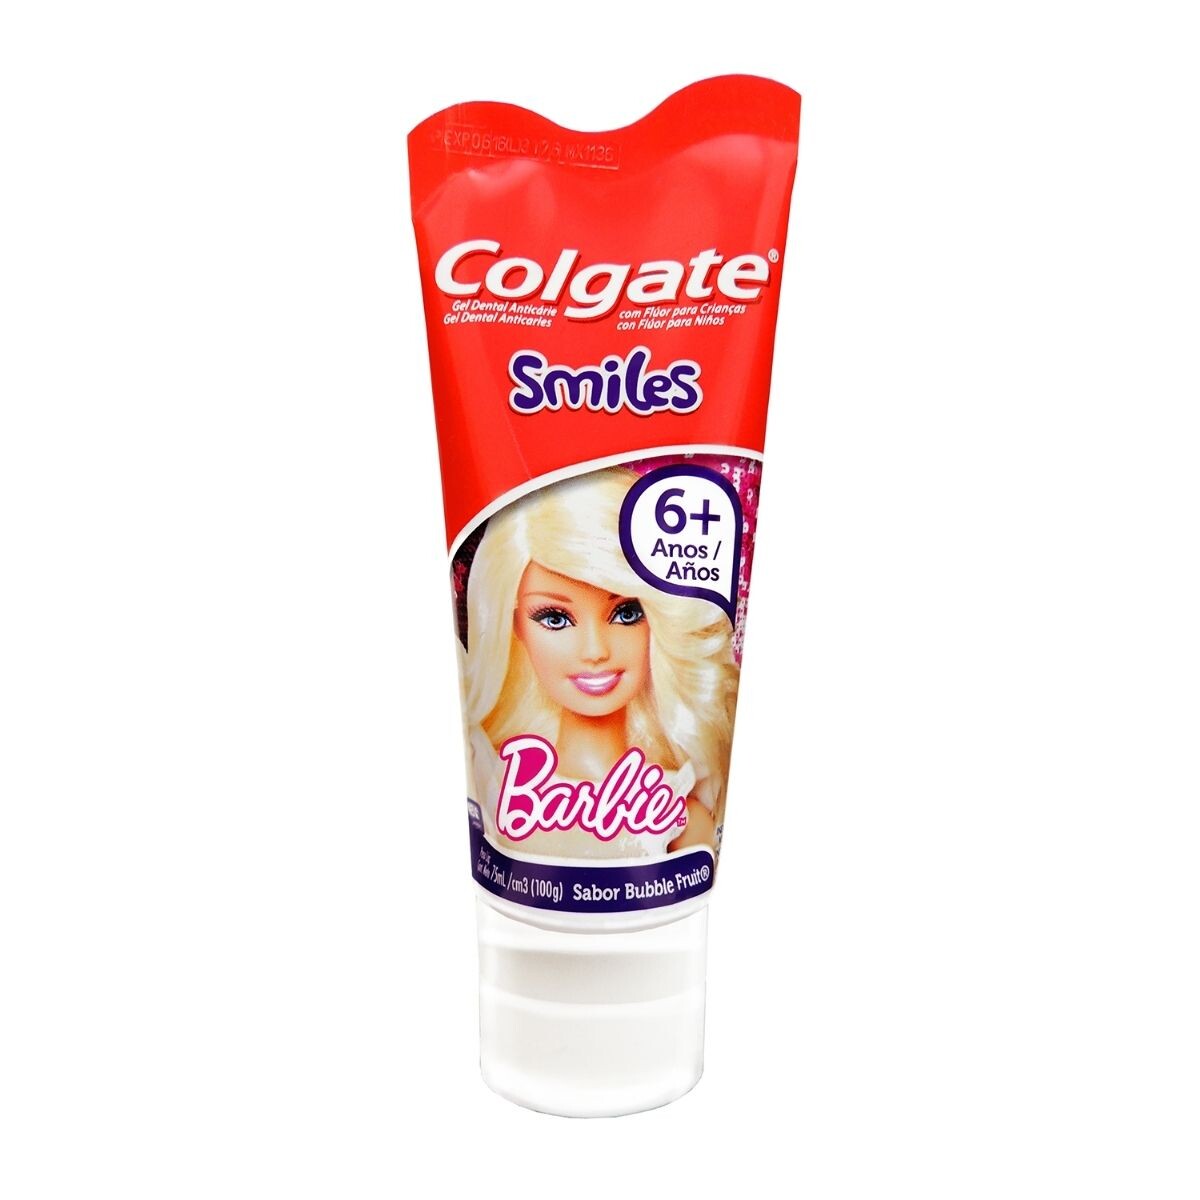 Pasta Dental Colgate Smiles +6 - Barbie 100 GR 